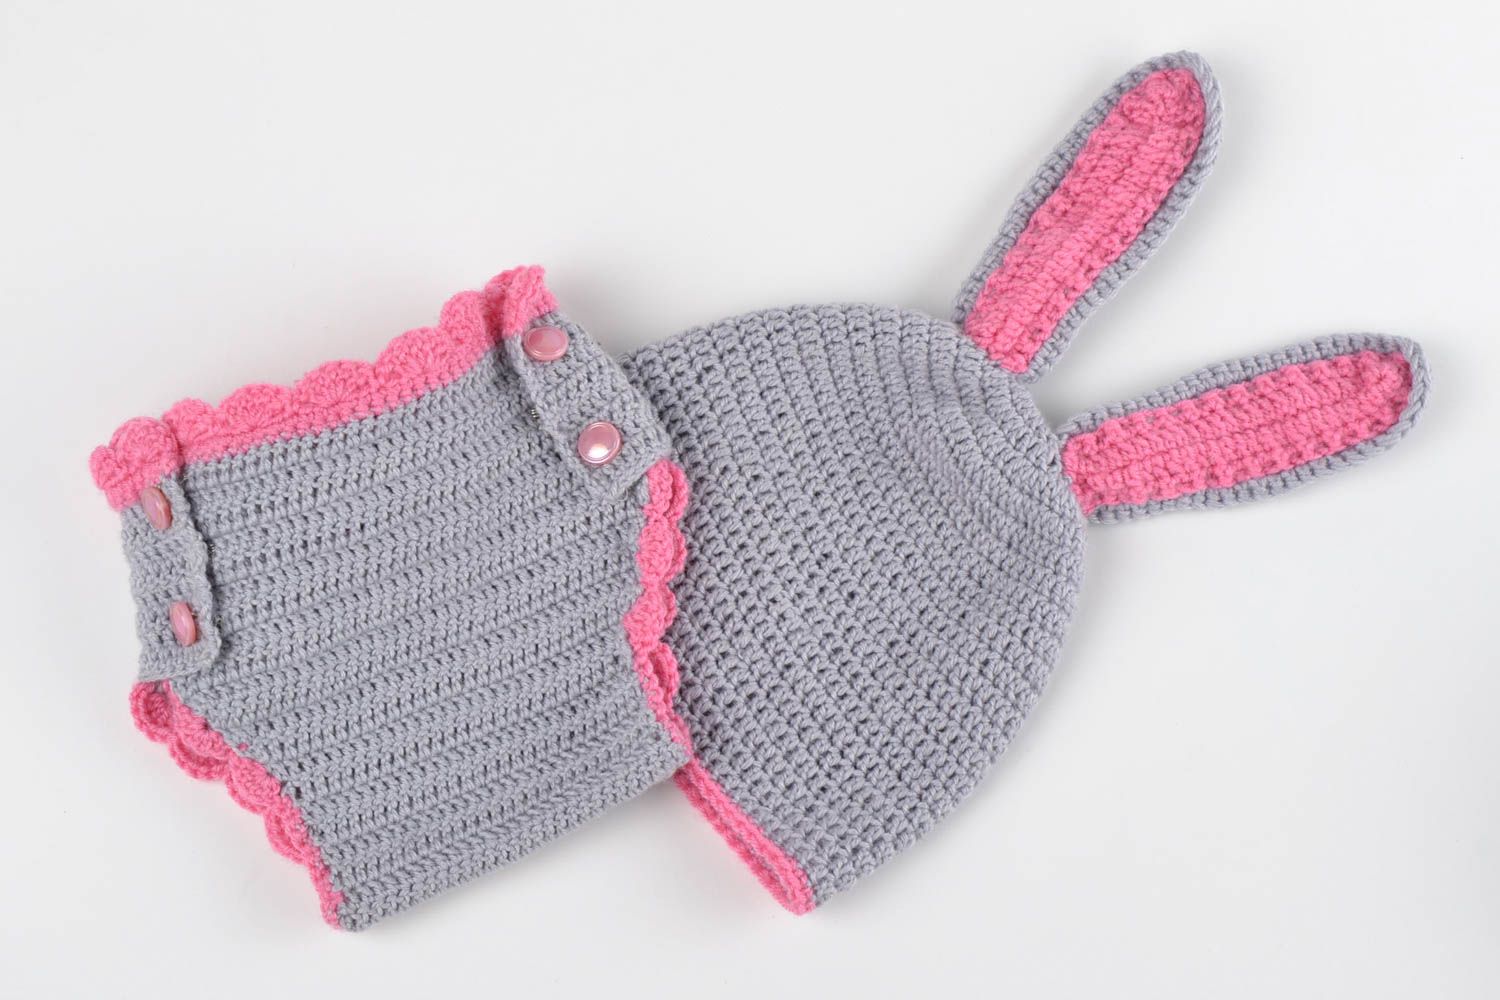 Culotte bébé fait main Bonnet bébé Vêtement enfant tricotés au crochet photo 1